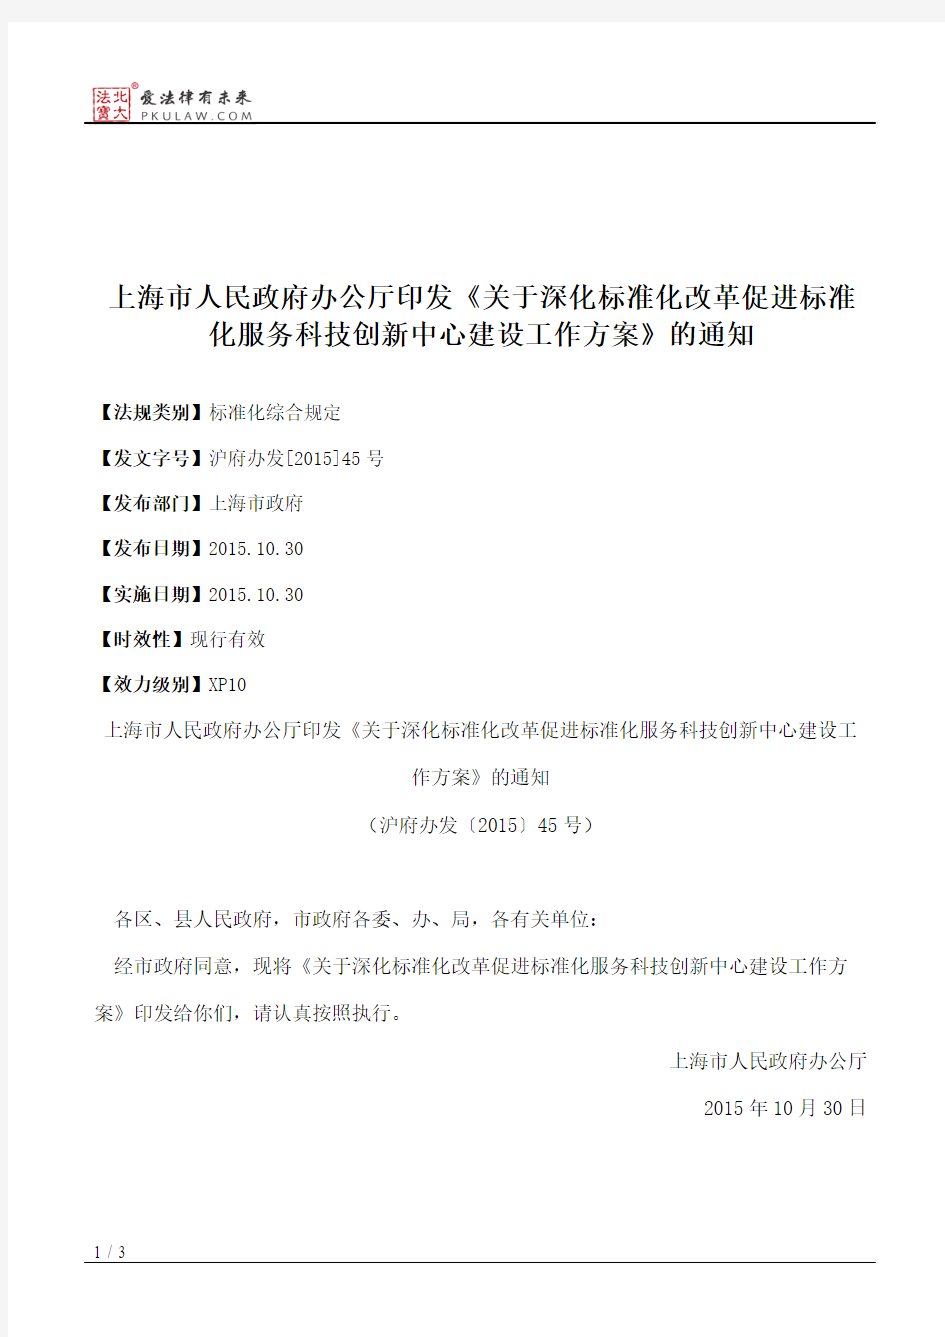 上海市人民政府办公厅印发《关于深化标准化改革促进标准化服务科